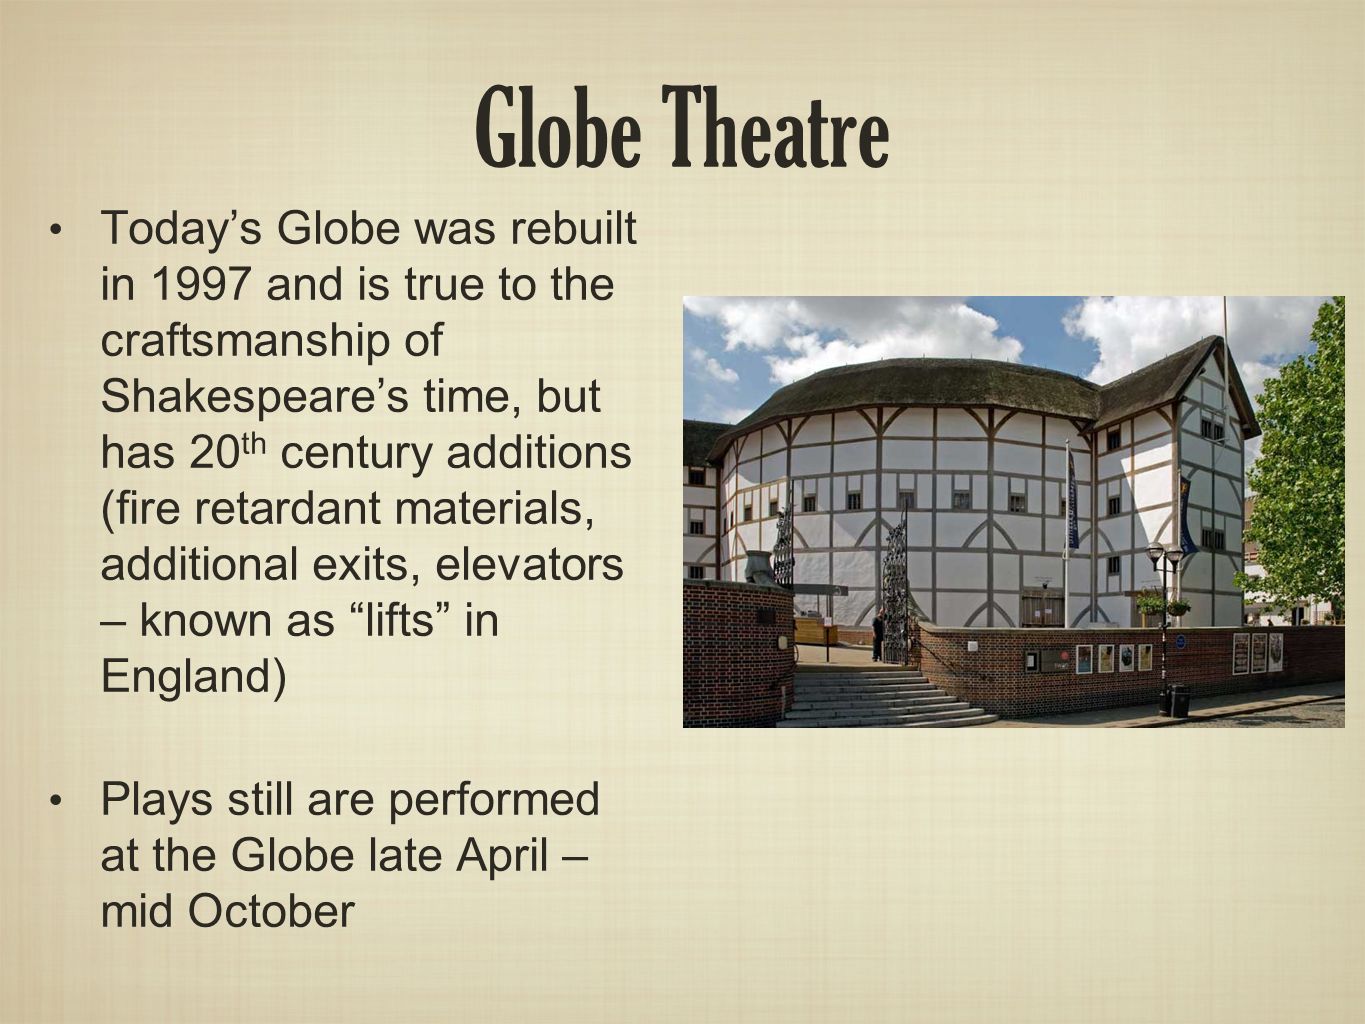 Theatre перевод на русский. Театр Глобус Шекспира. The Globe Theatre in London текст. Презентация the Globe Theatre. Английский театр Глобус.